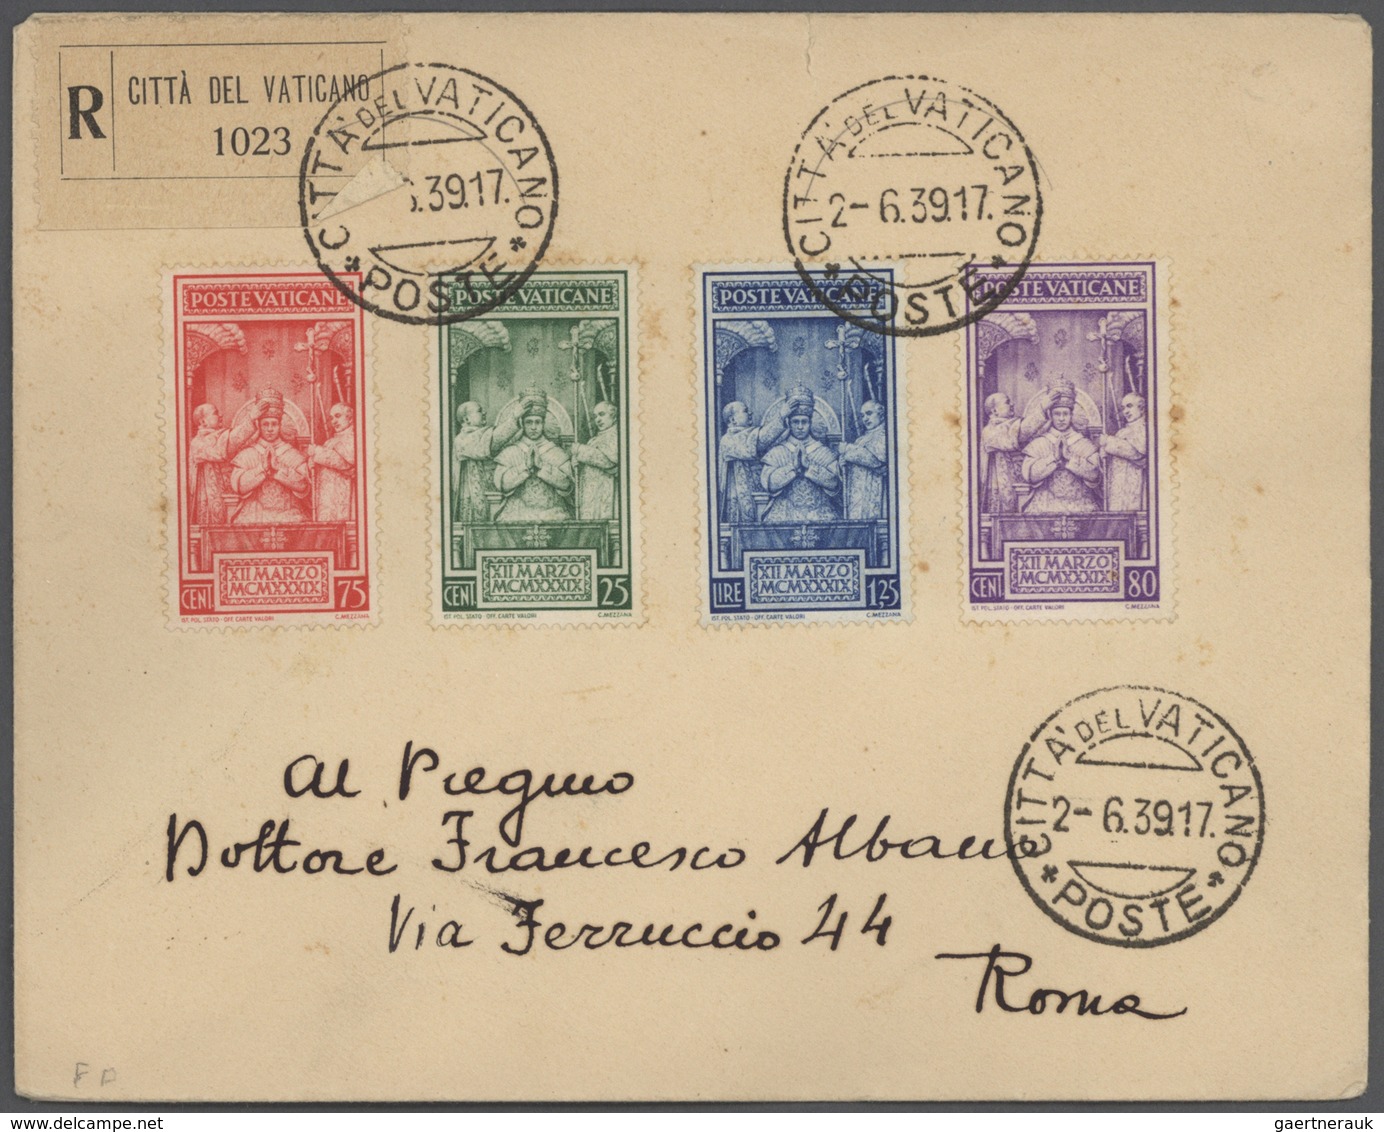 Br/GA Italien: 1858/1964, ca. 110 Briefe, Karten und Ganzsachen ab Altitalienische Staaten und inkl. San M